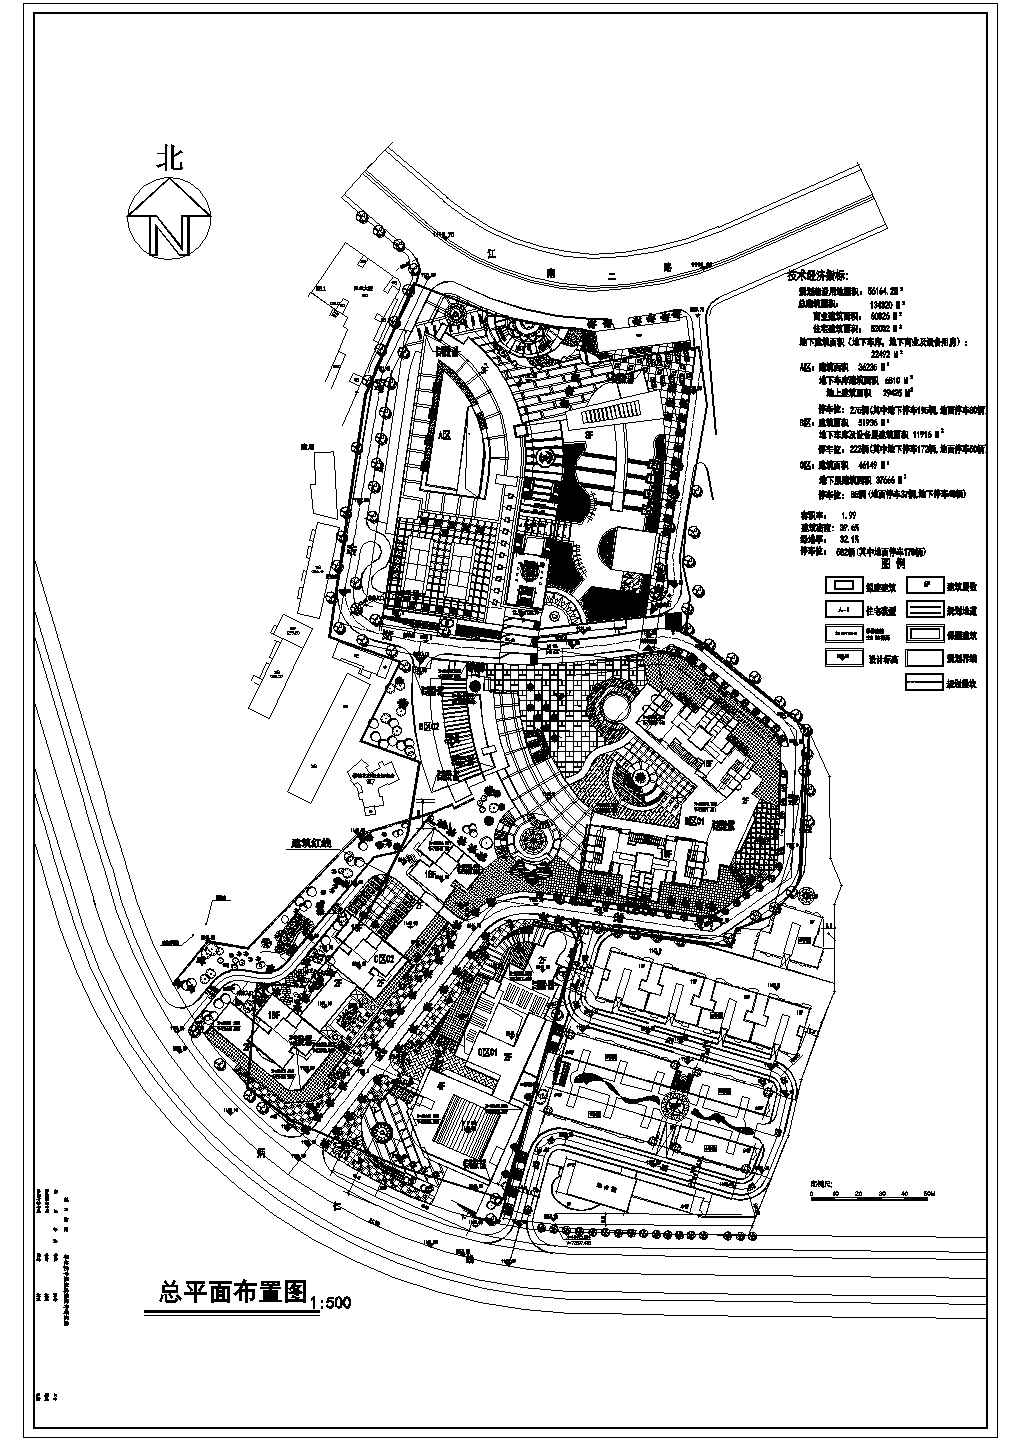 金色广场景观工程规划设计总平面布置图